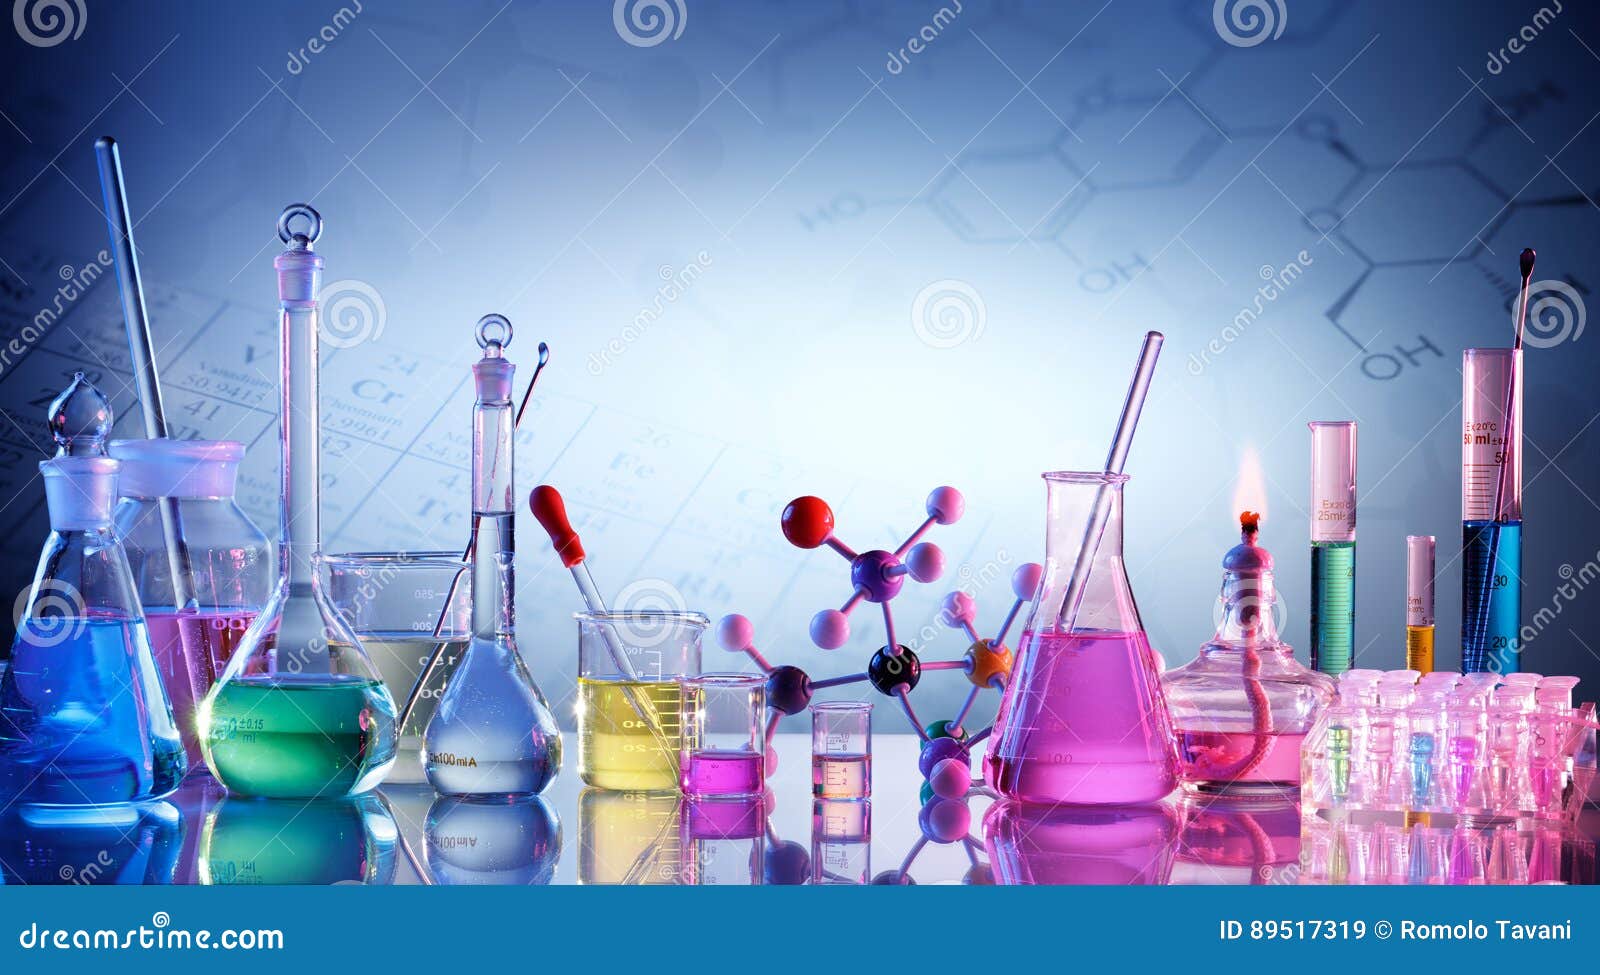 laboratory research - scientific glassware